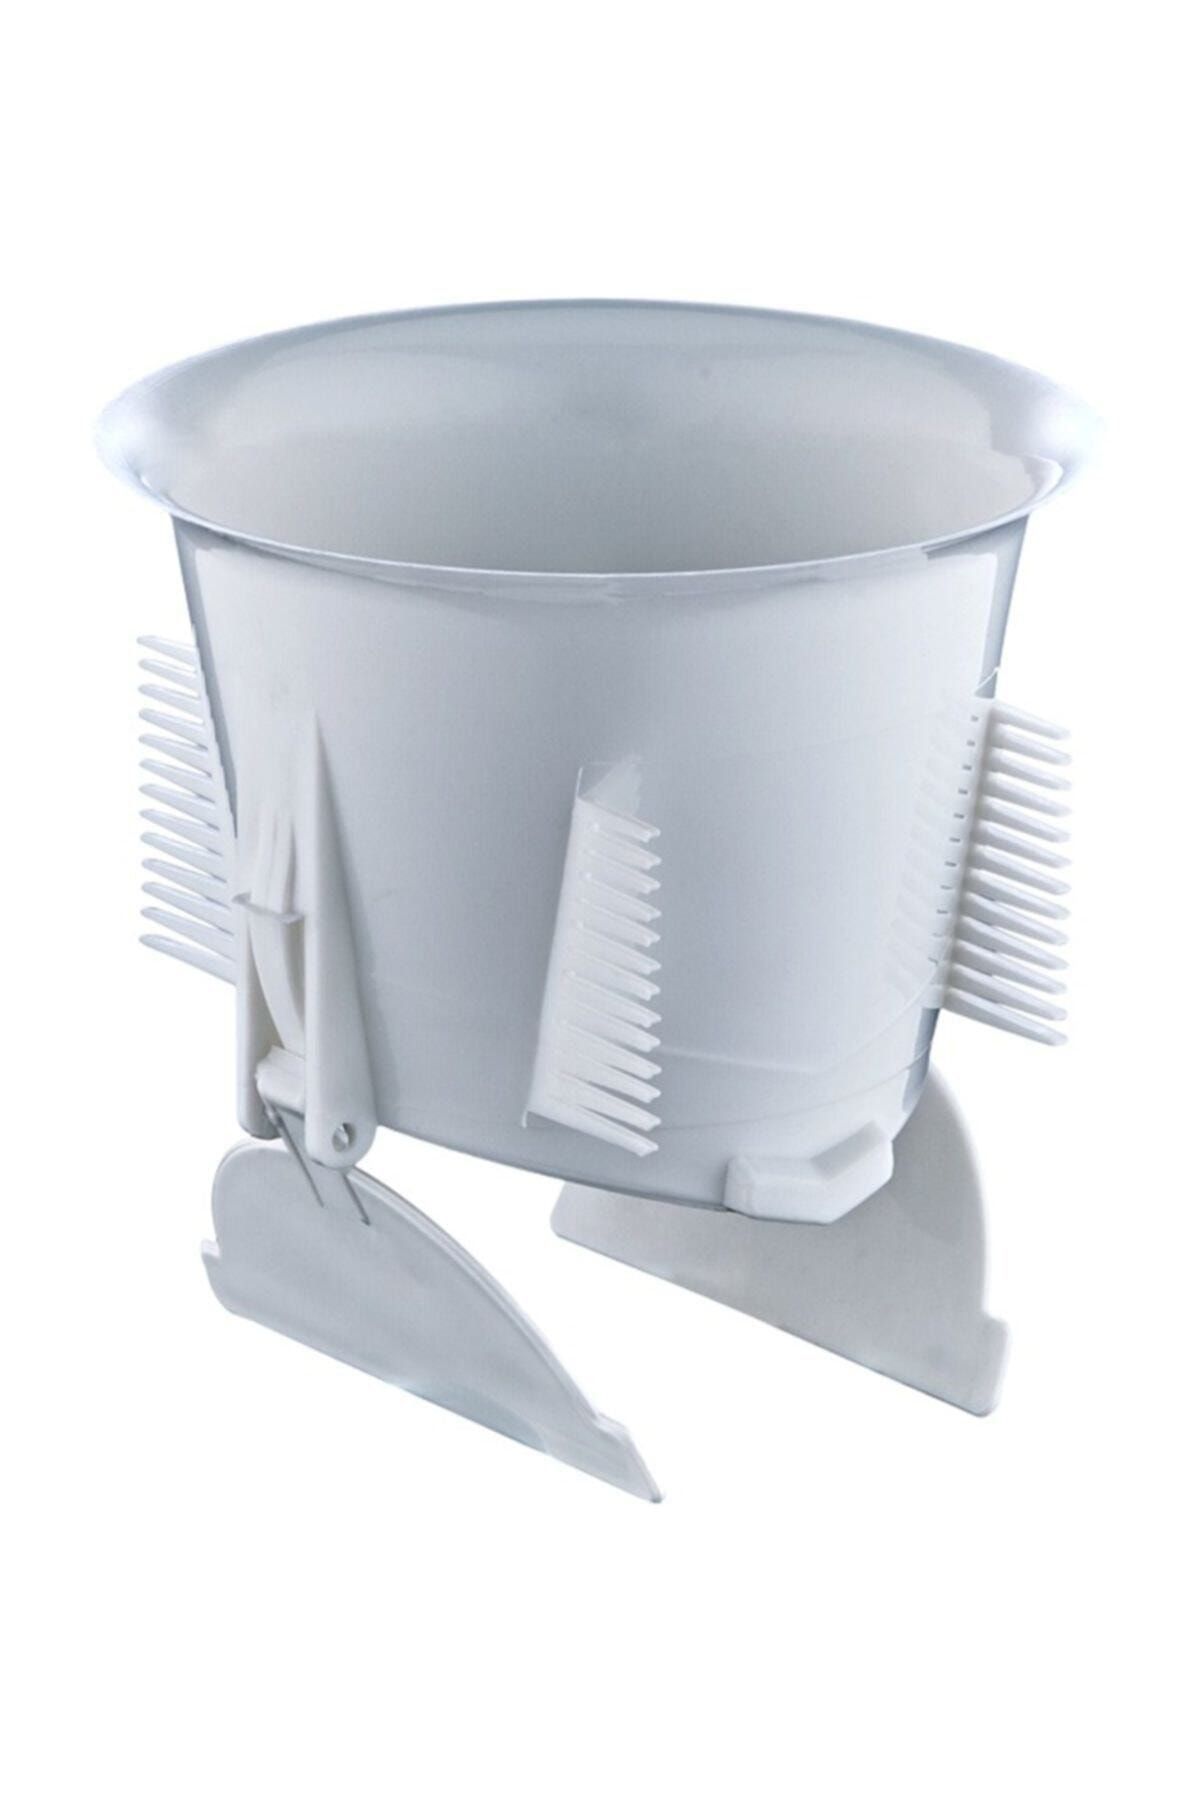 Genel Markalar Koku Önleyici Wc-matik Sessiz Wc Tuvalet Kapağı Haşere-fare Önleyici Tuvalet Kapağı Farelik 4 Adet